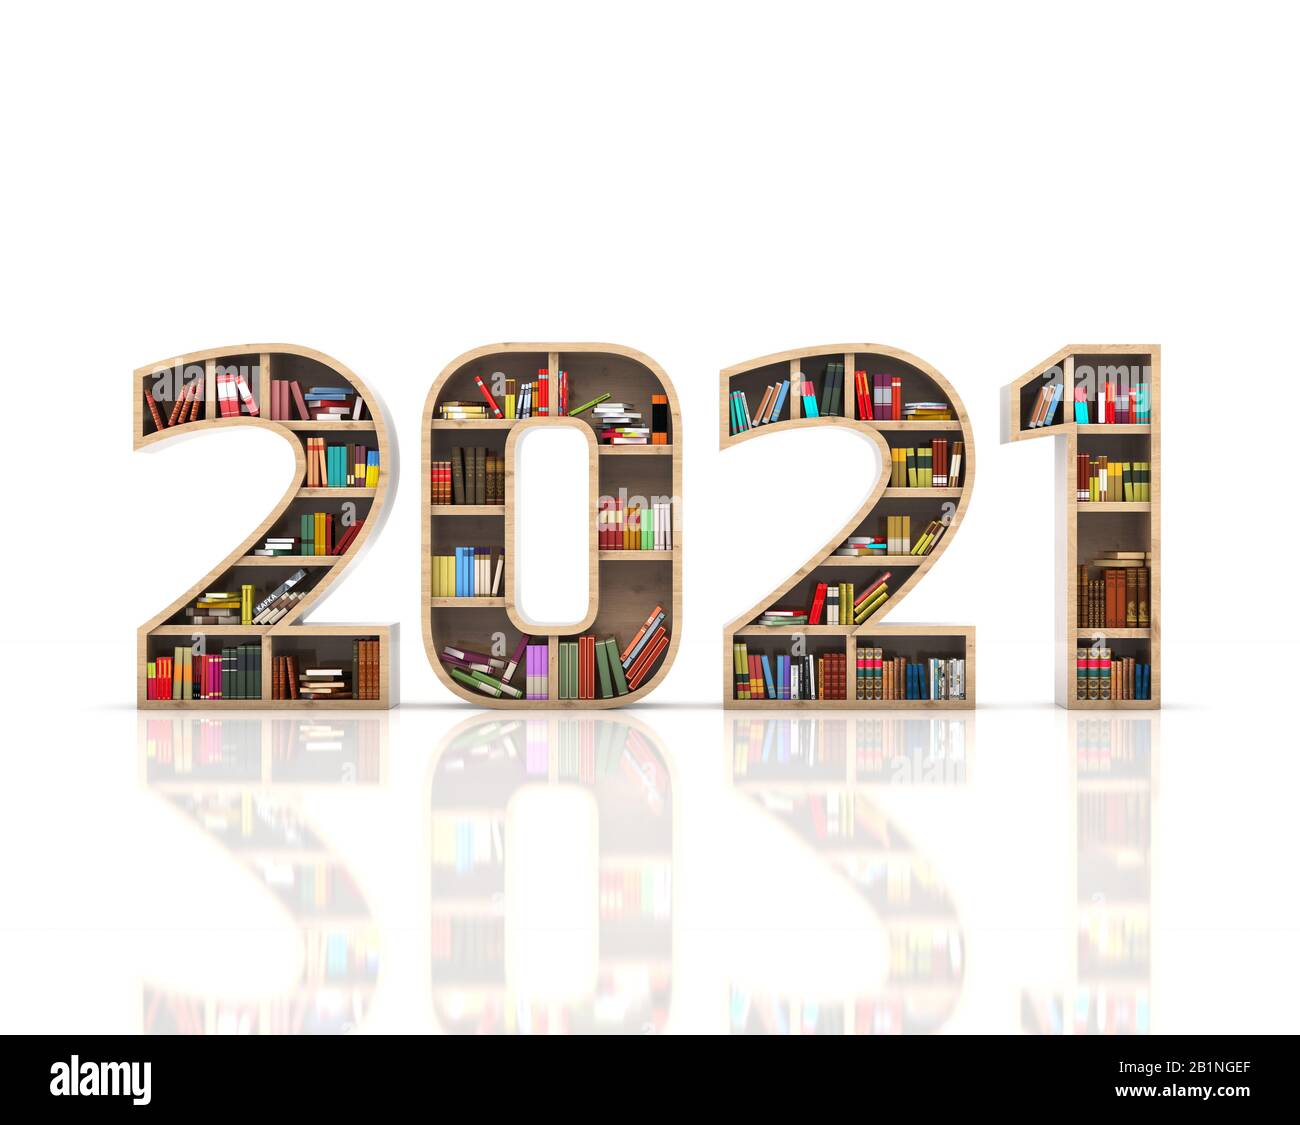 Neues Jahr 2021 Kreatives Designkonzept mit Bücherregal - 3D Gerendertes Bild Stockfoto